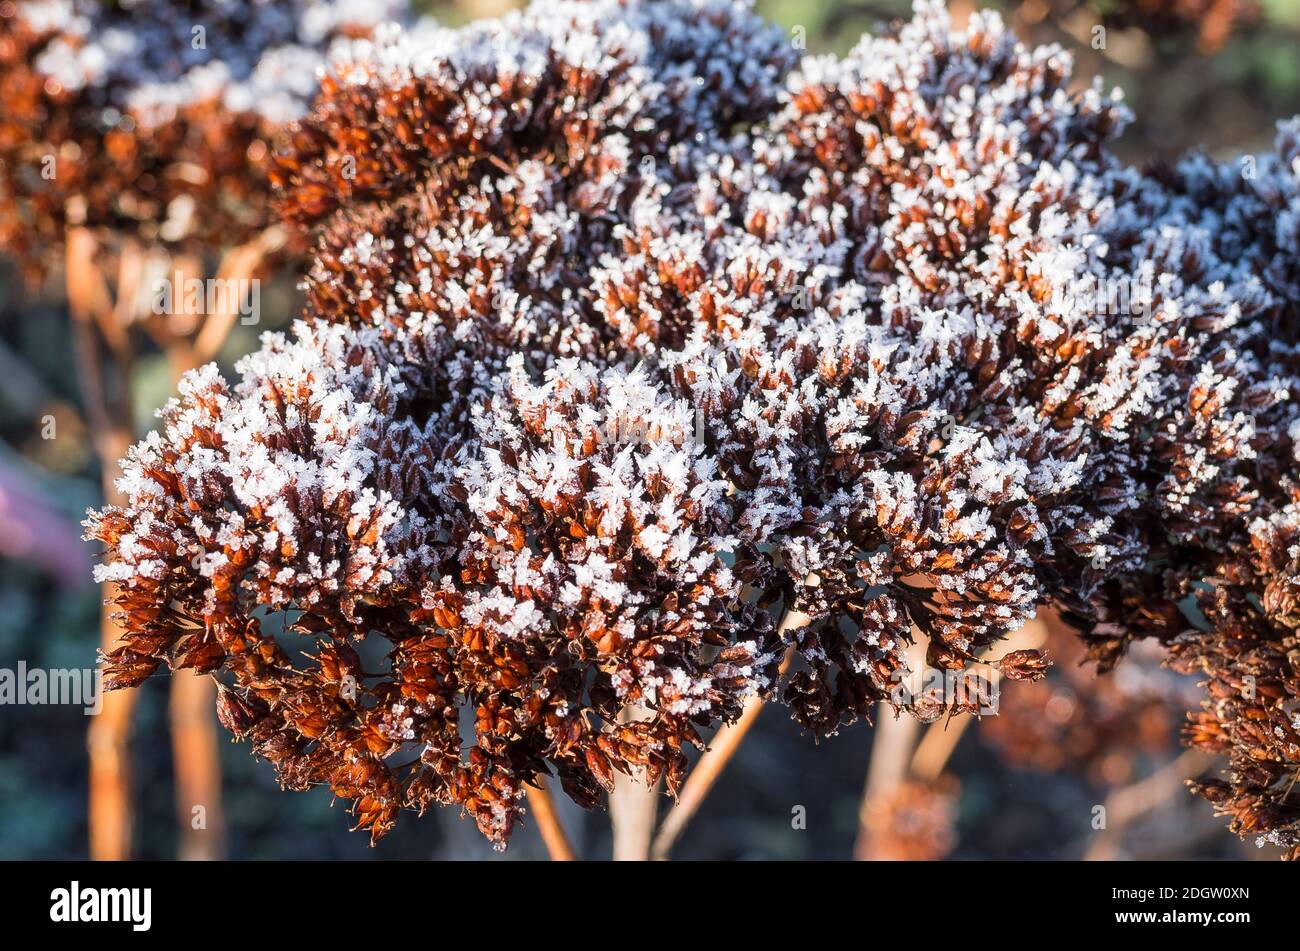 La cabeza de la planta de Sedum spectabile adquiere un aspecto pictórico cuando se desempolva Con nieve y escarcha en un jardín inglés Foto de stock